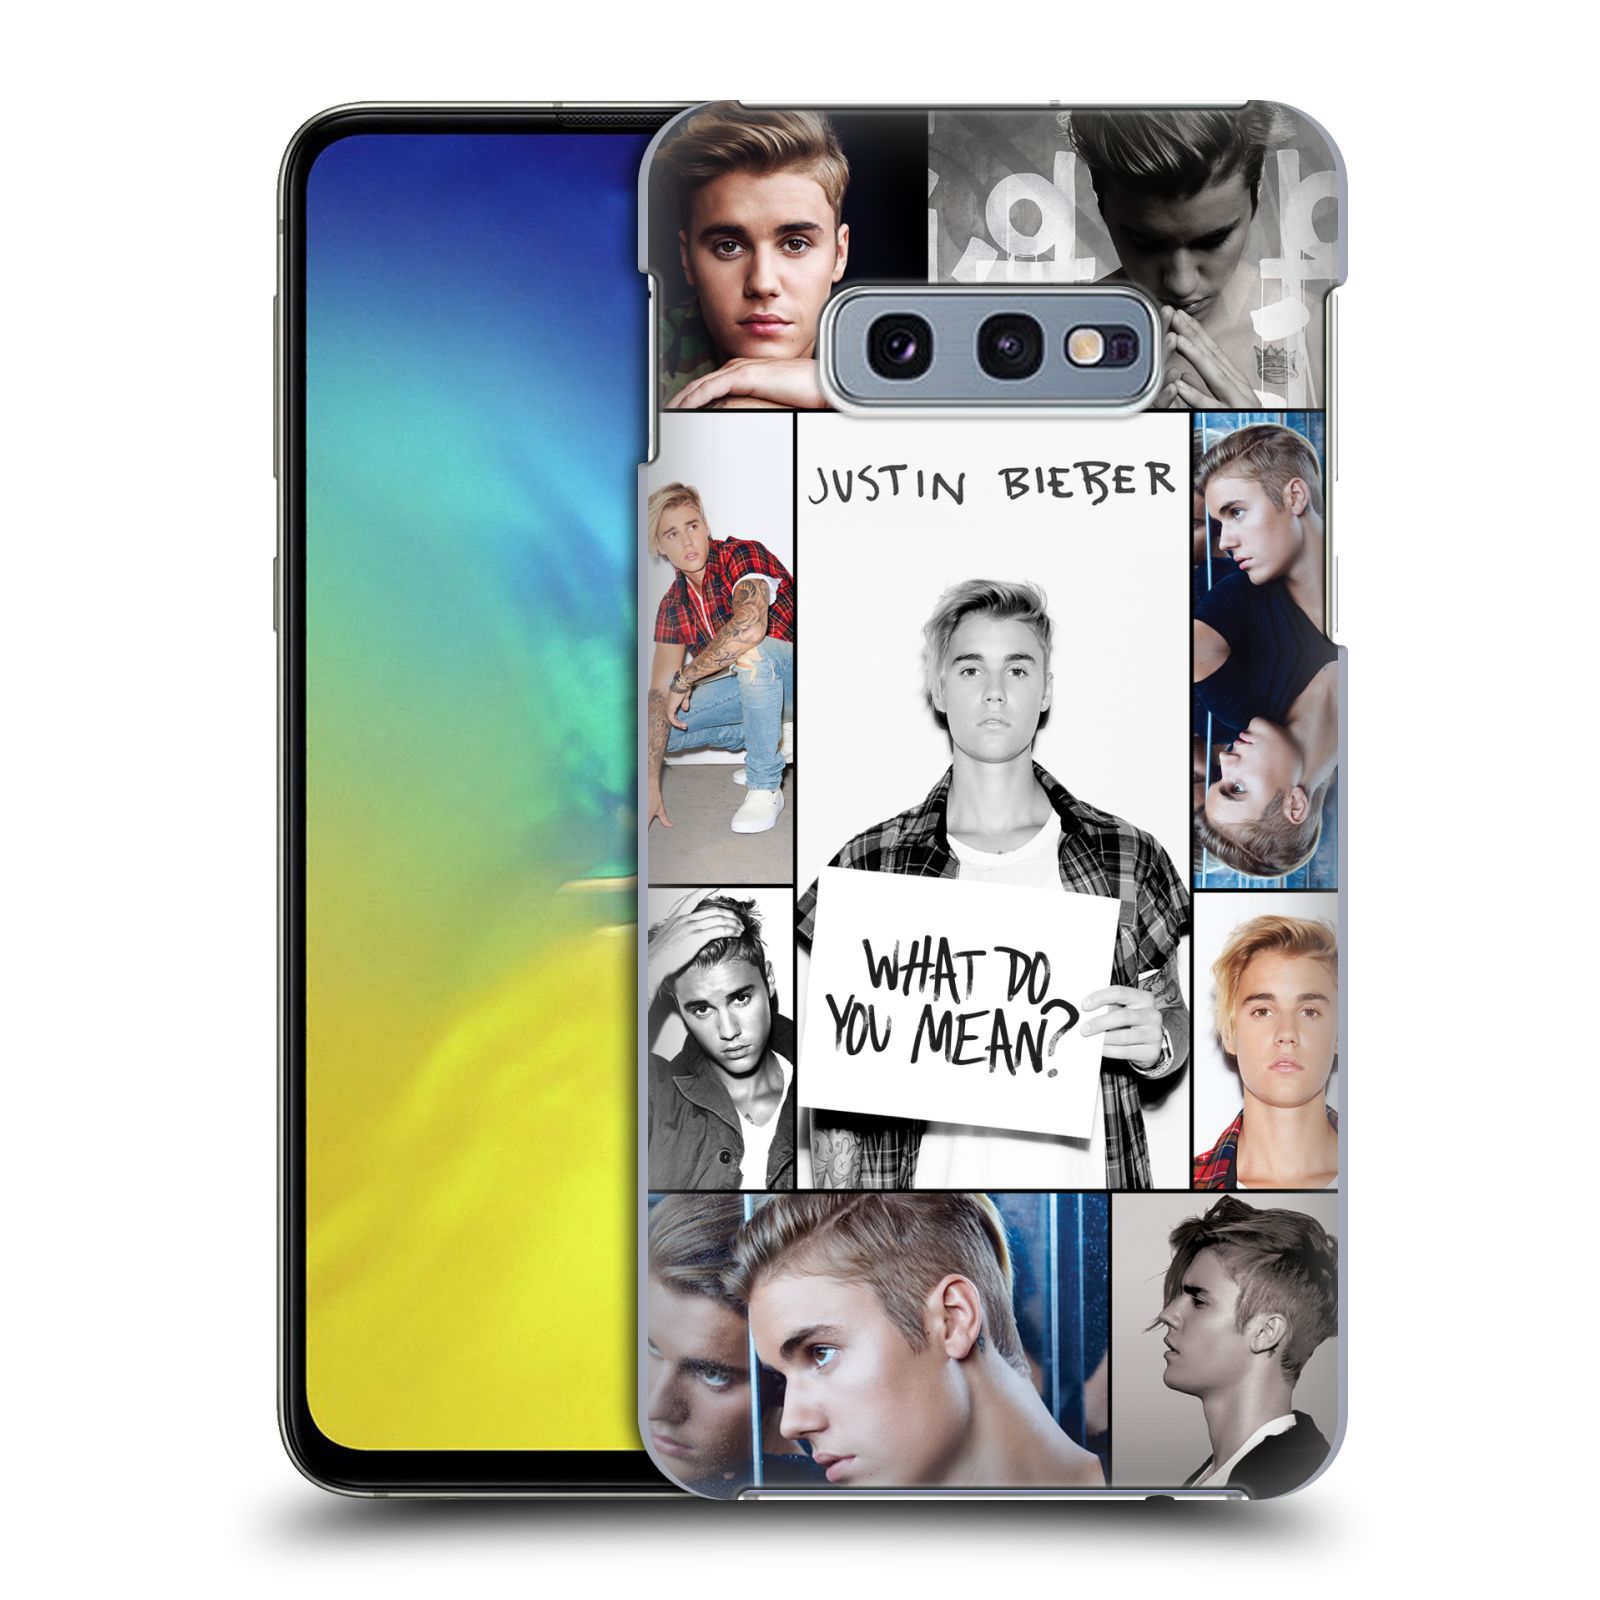 Pouzdro na mobil Samsung Galaxy S10e - HEAD CASE - Justin Bieber foto Purpose malé fotky